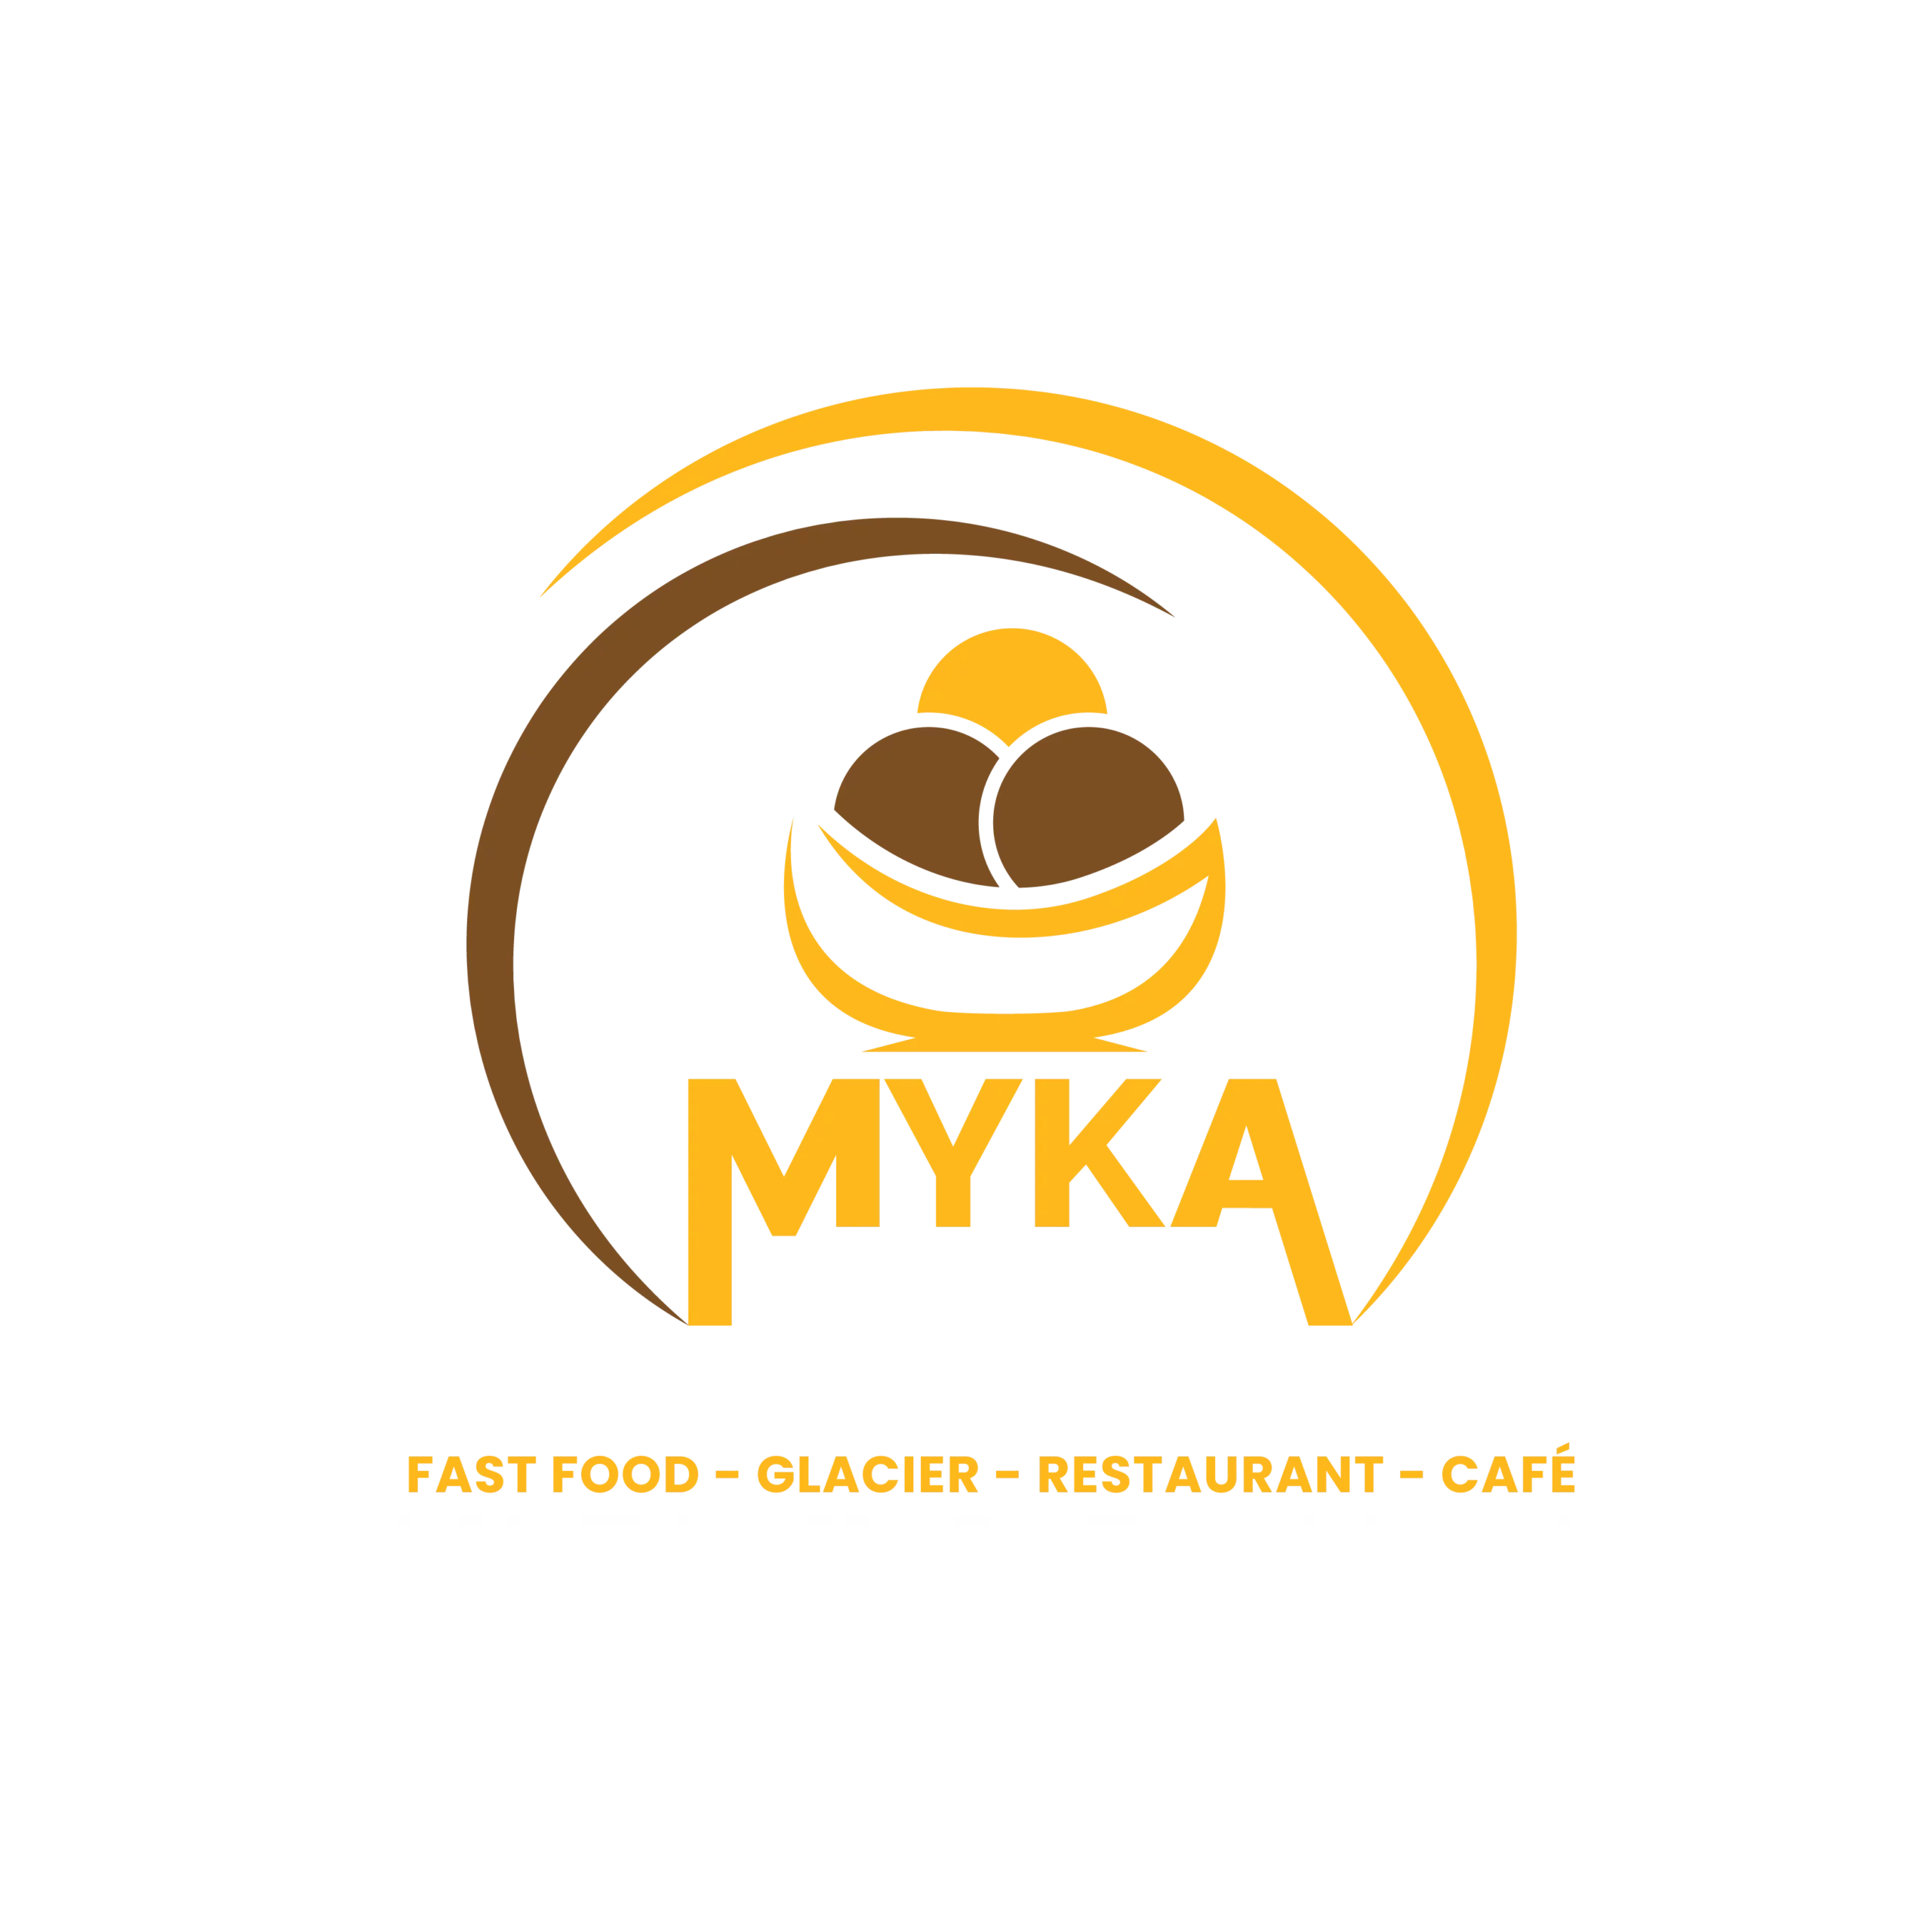 MYKA est un glacier -fast-food avec lequel nous travaillons afin d'accroitre la presence de celle-ci sur le digitale